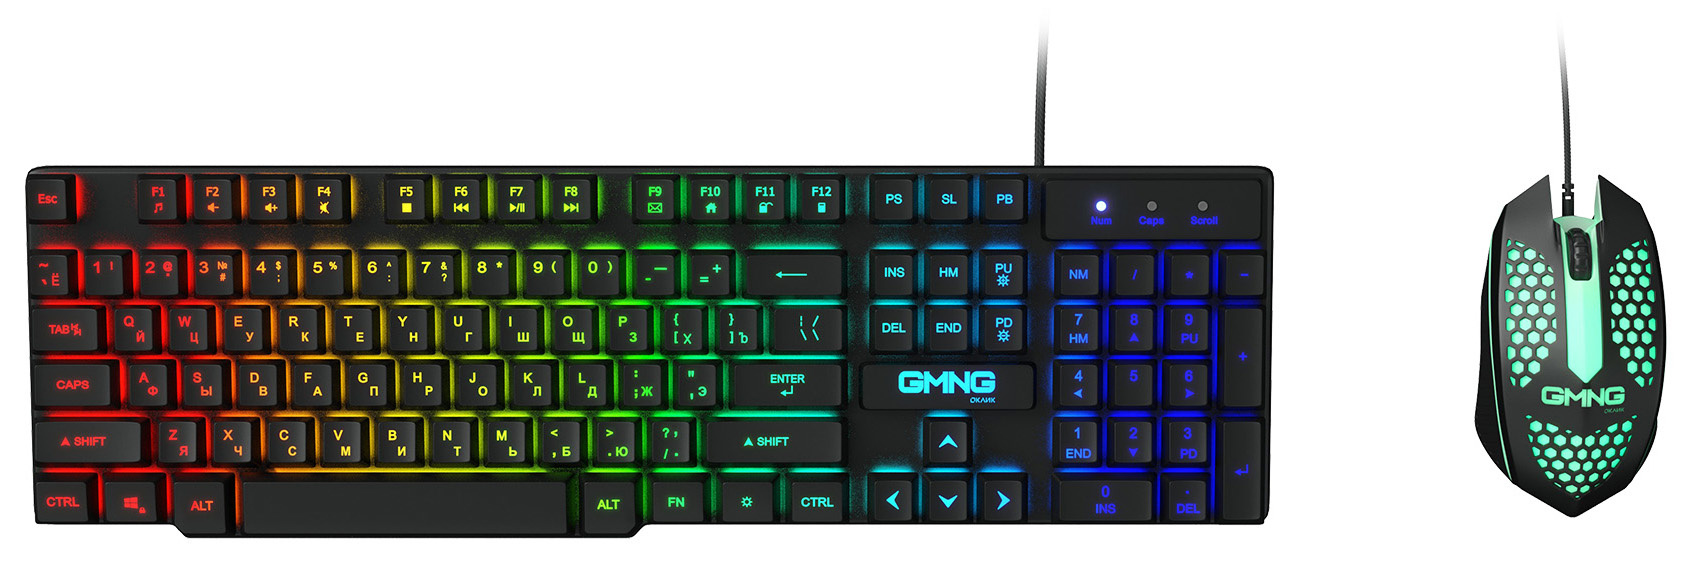 Клавиатура + мышь GMNG 400GMK, USB, несколько цветов (1546779)